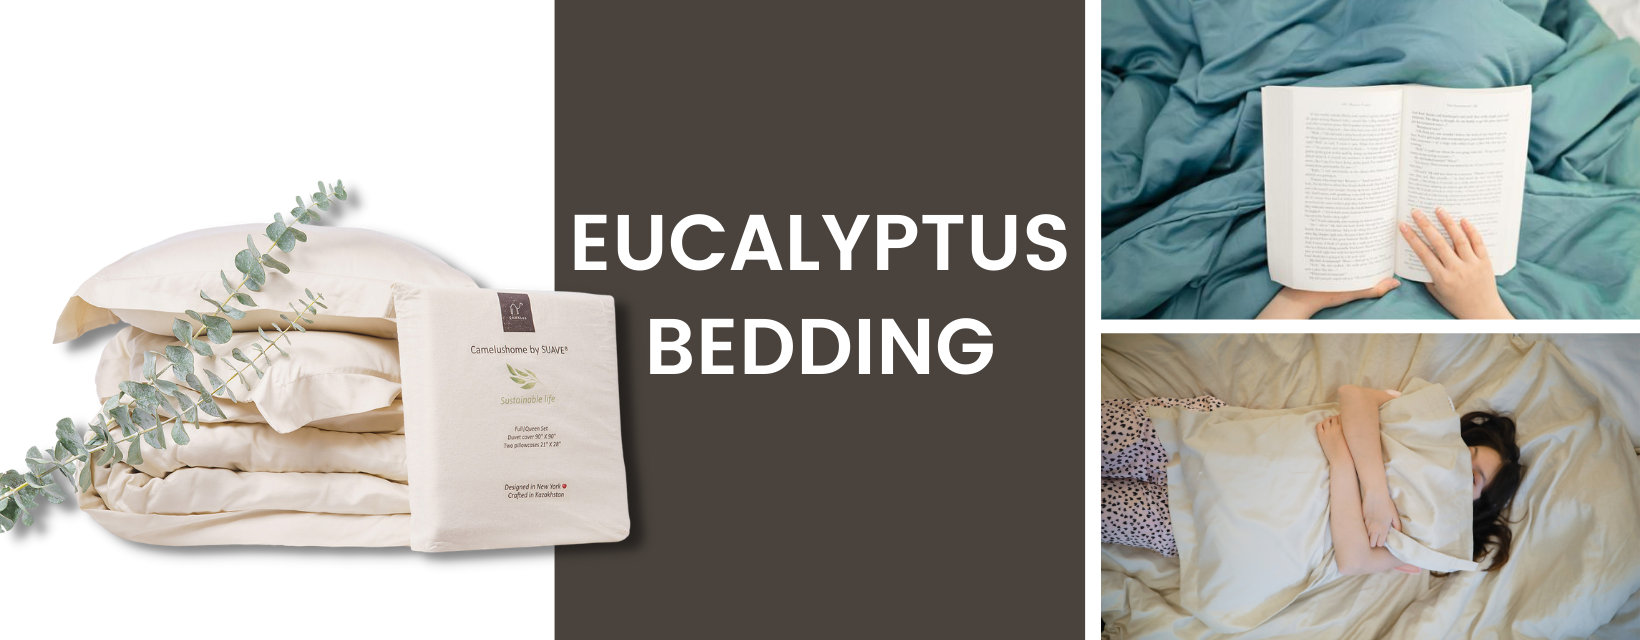 Eucalyptus Bedding